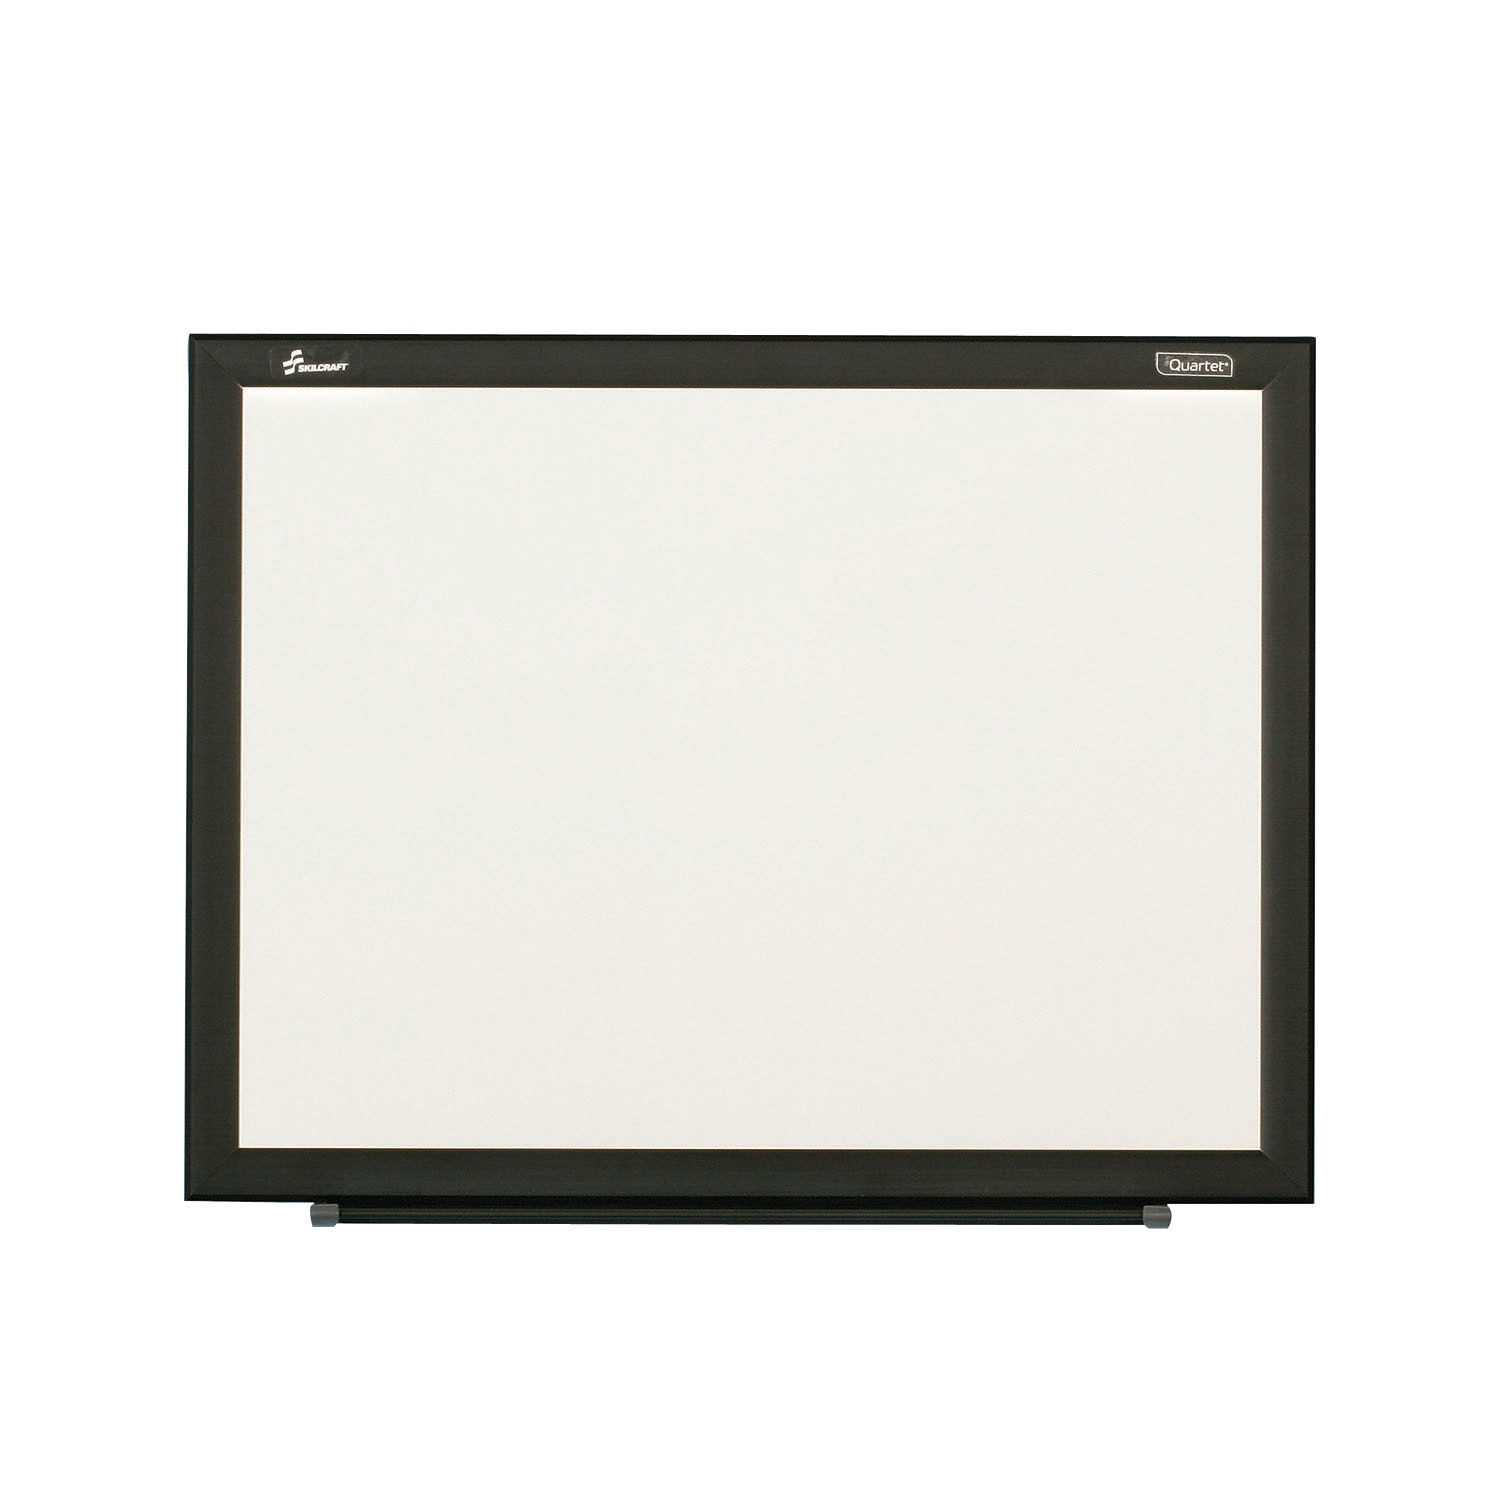 Dry Erase Whiteboard, Non-magnetic Melamine Surface, Black Aluminum Frame, 2 x 1.5